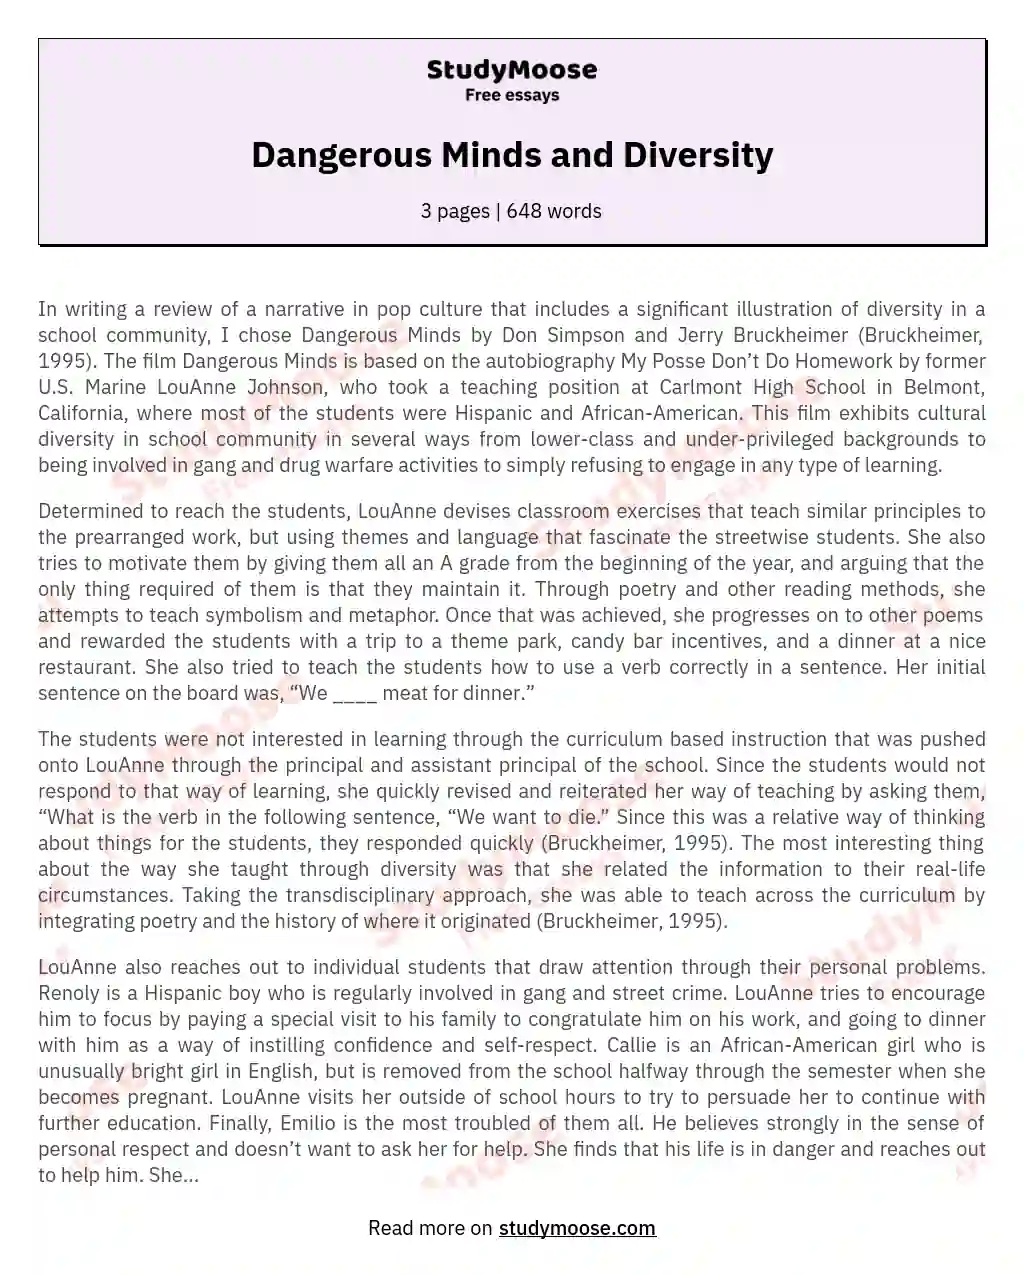 Dangerous Minds and Diversity essay